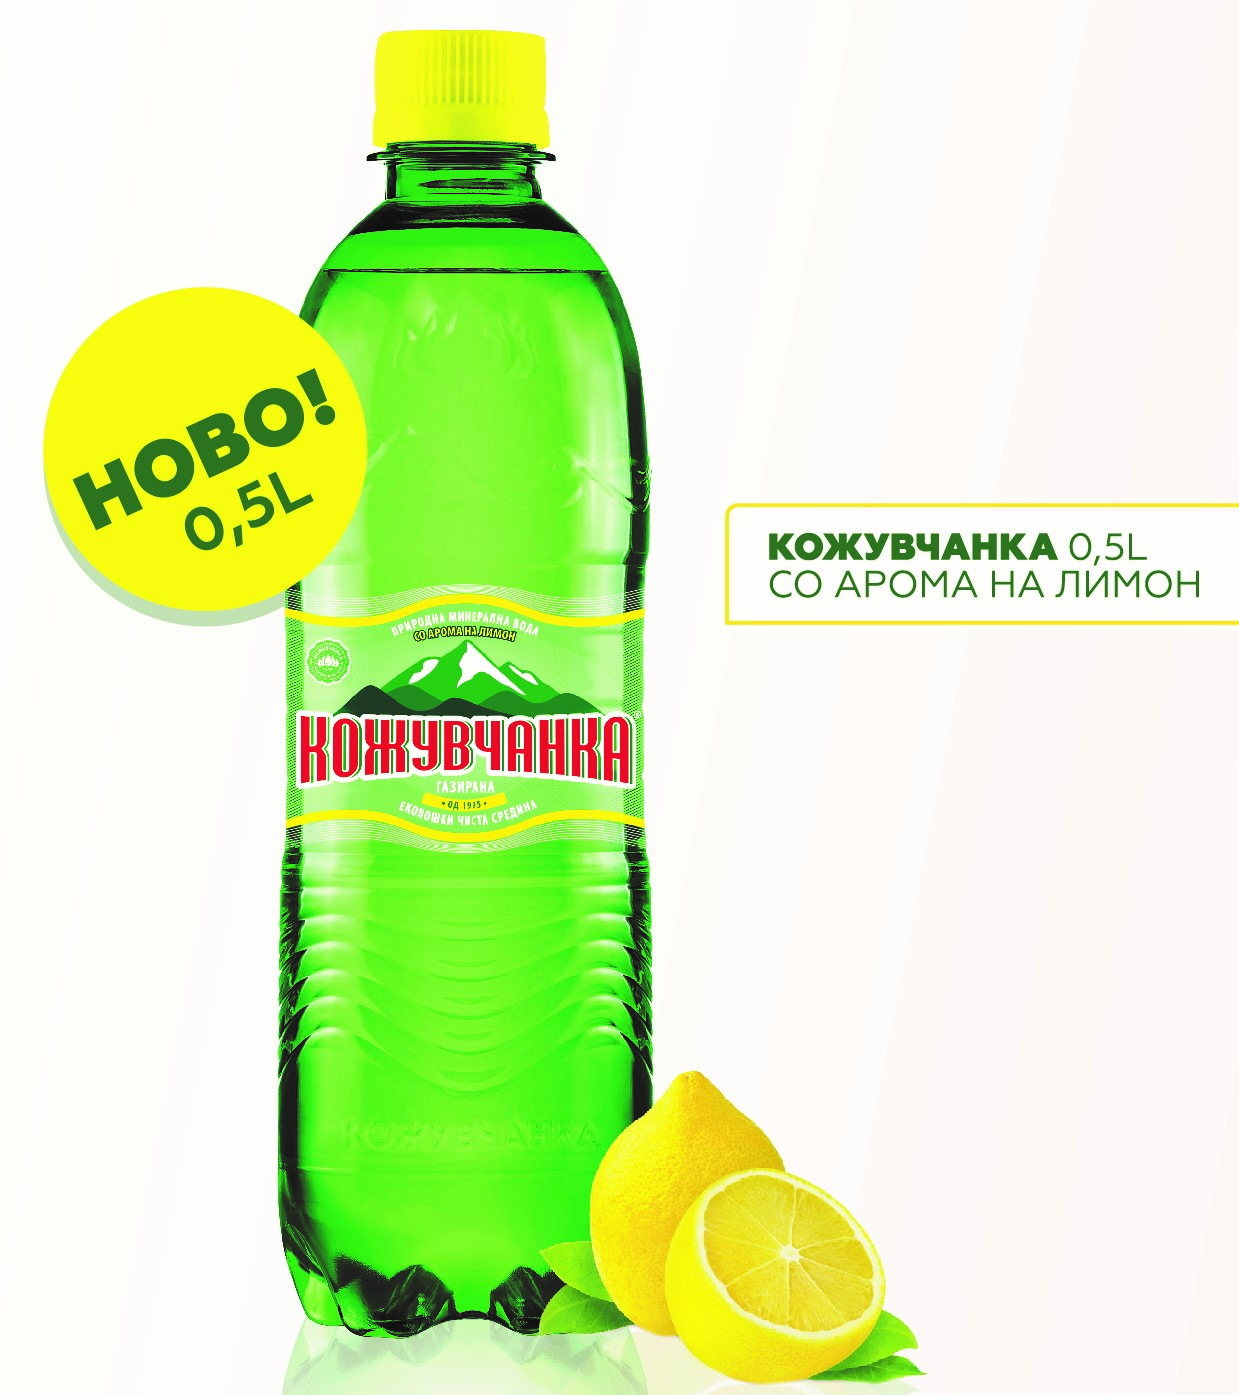 НОВО- Кожувчанка 0,5L со арома на лимон